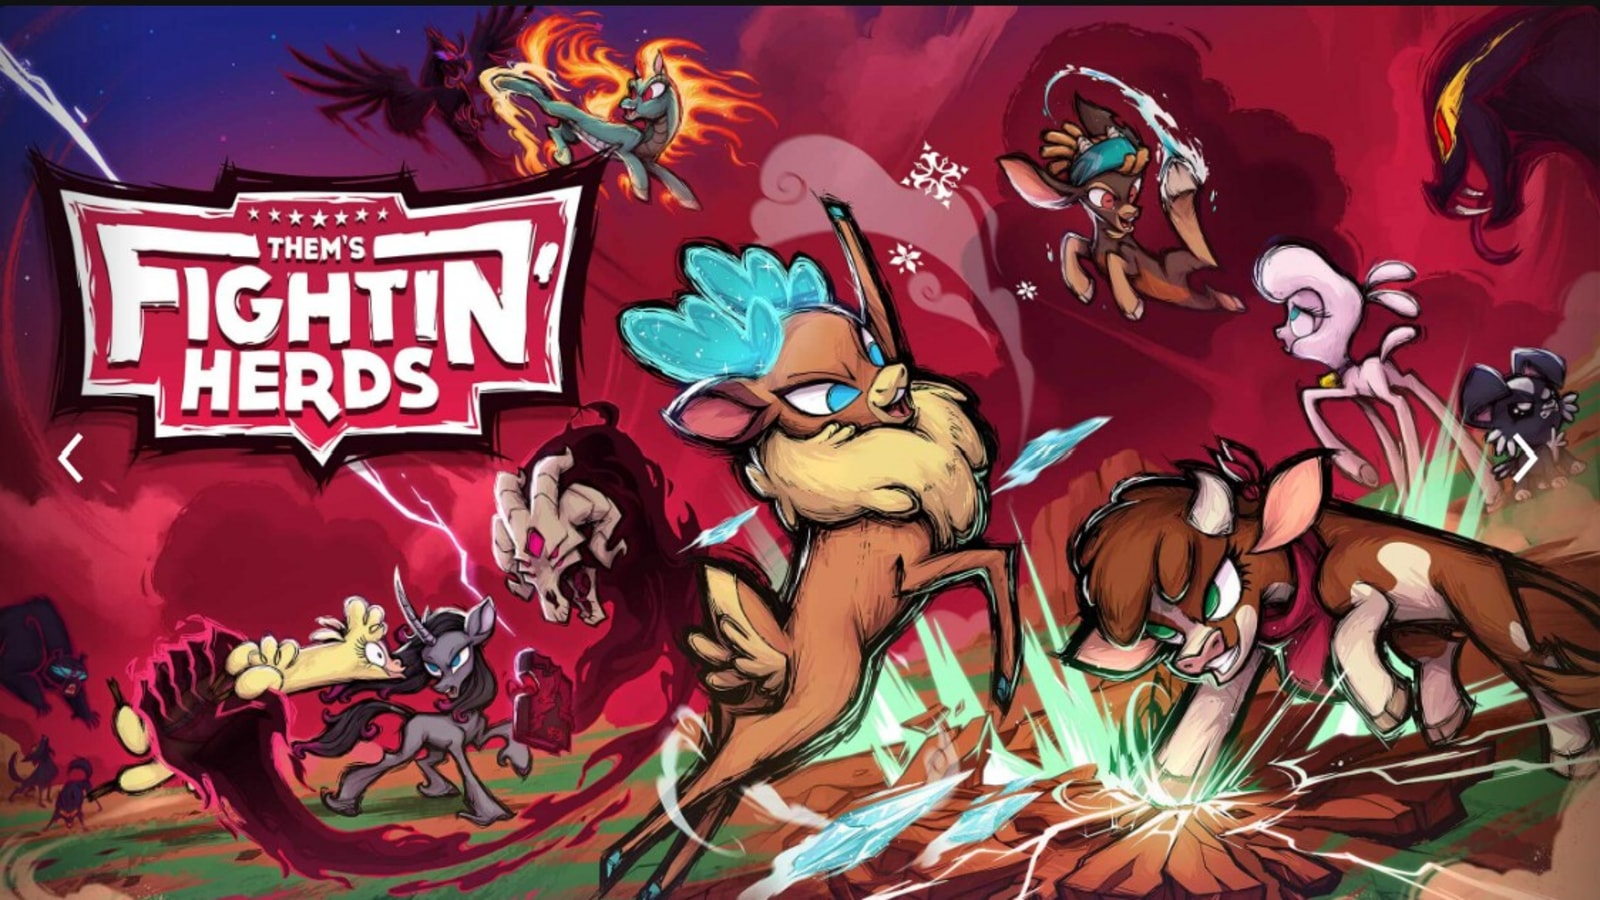 Vazamento indica que Them's Fightin' Herds será o próximo Jogo Grátis  misterioso da Epic Games Store